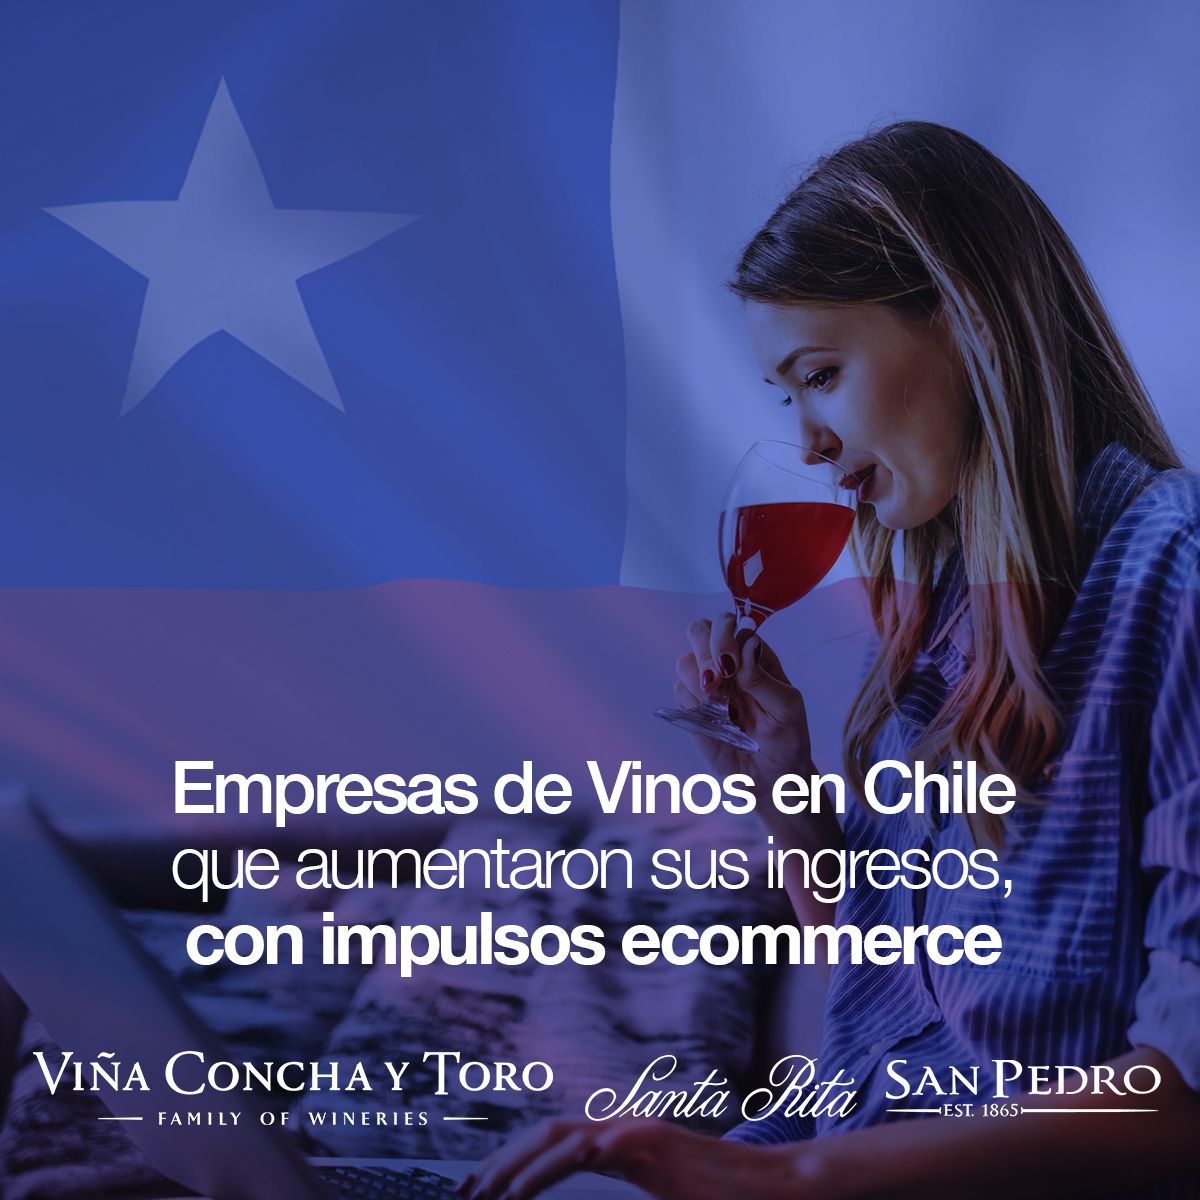 Empresas de Vinos en Chile que aumentaron sus ingresos, con impulsos ecommerce